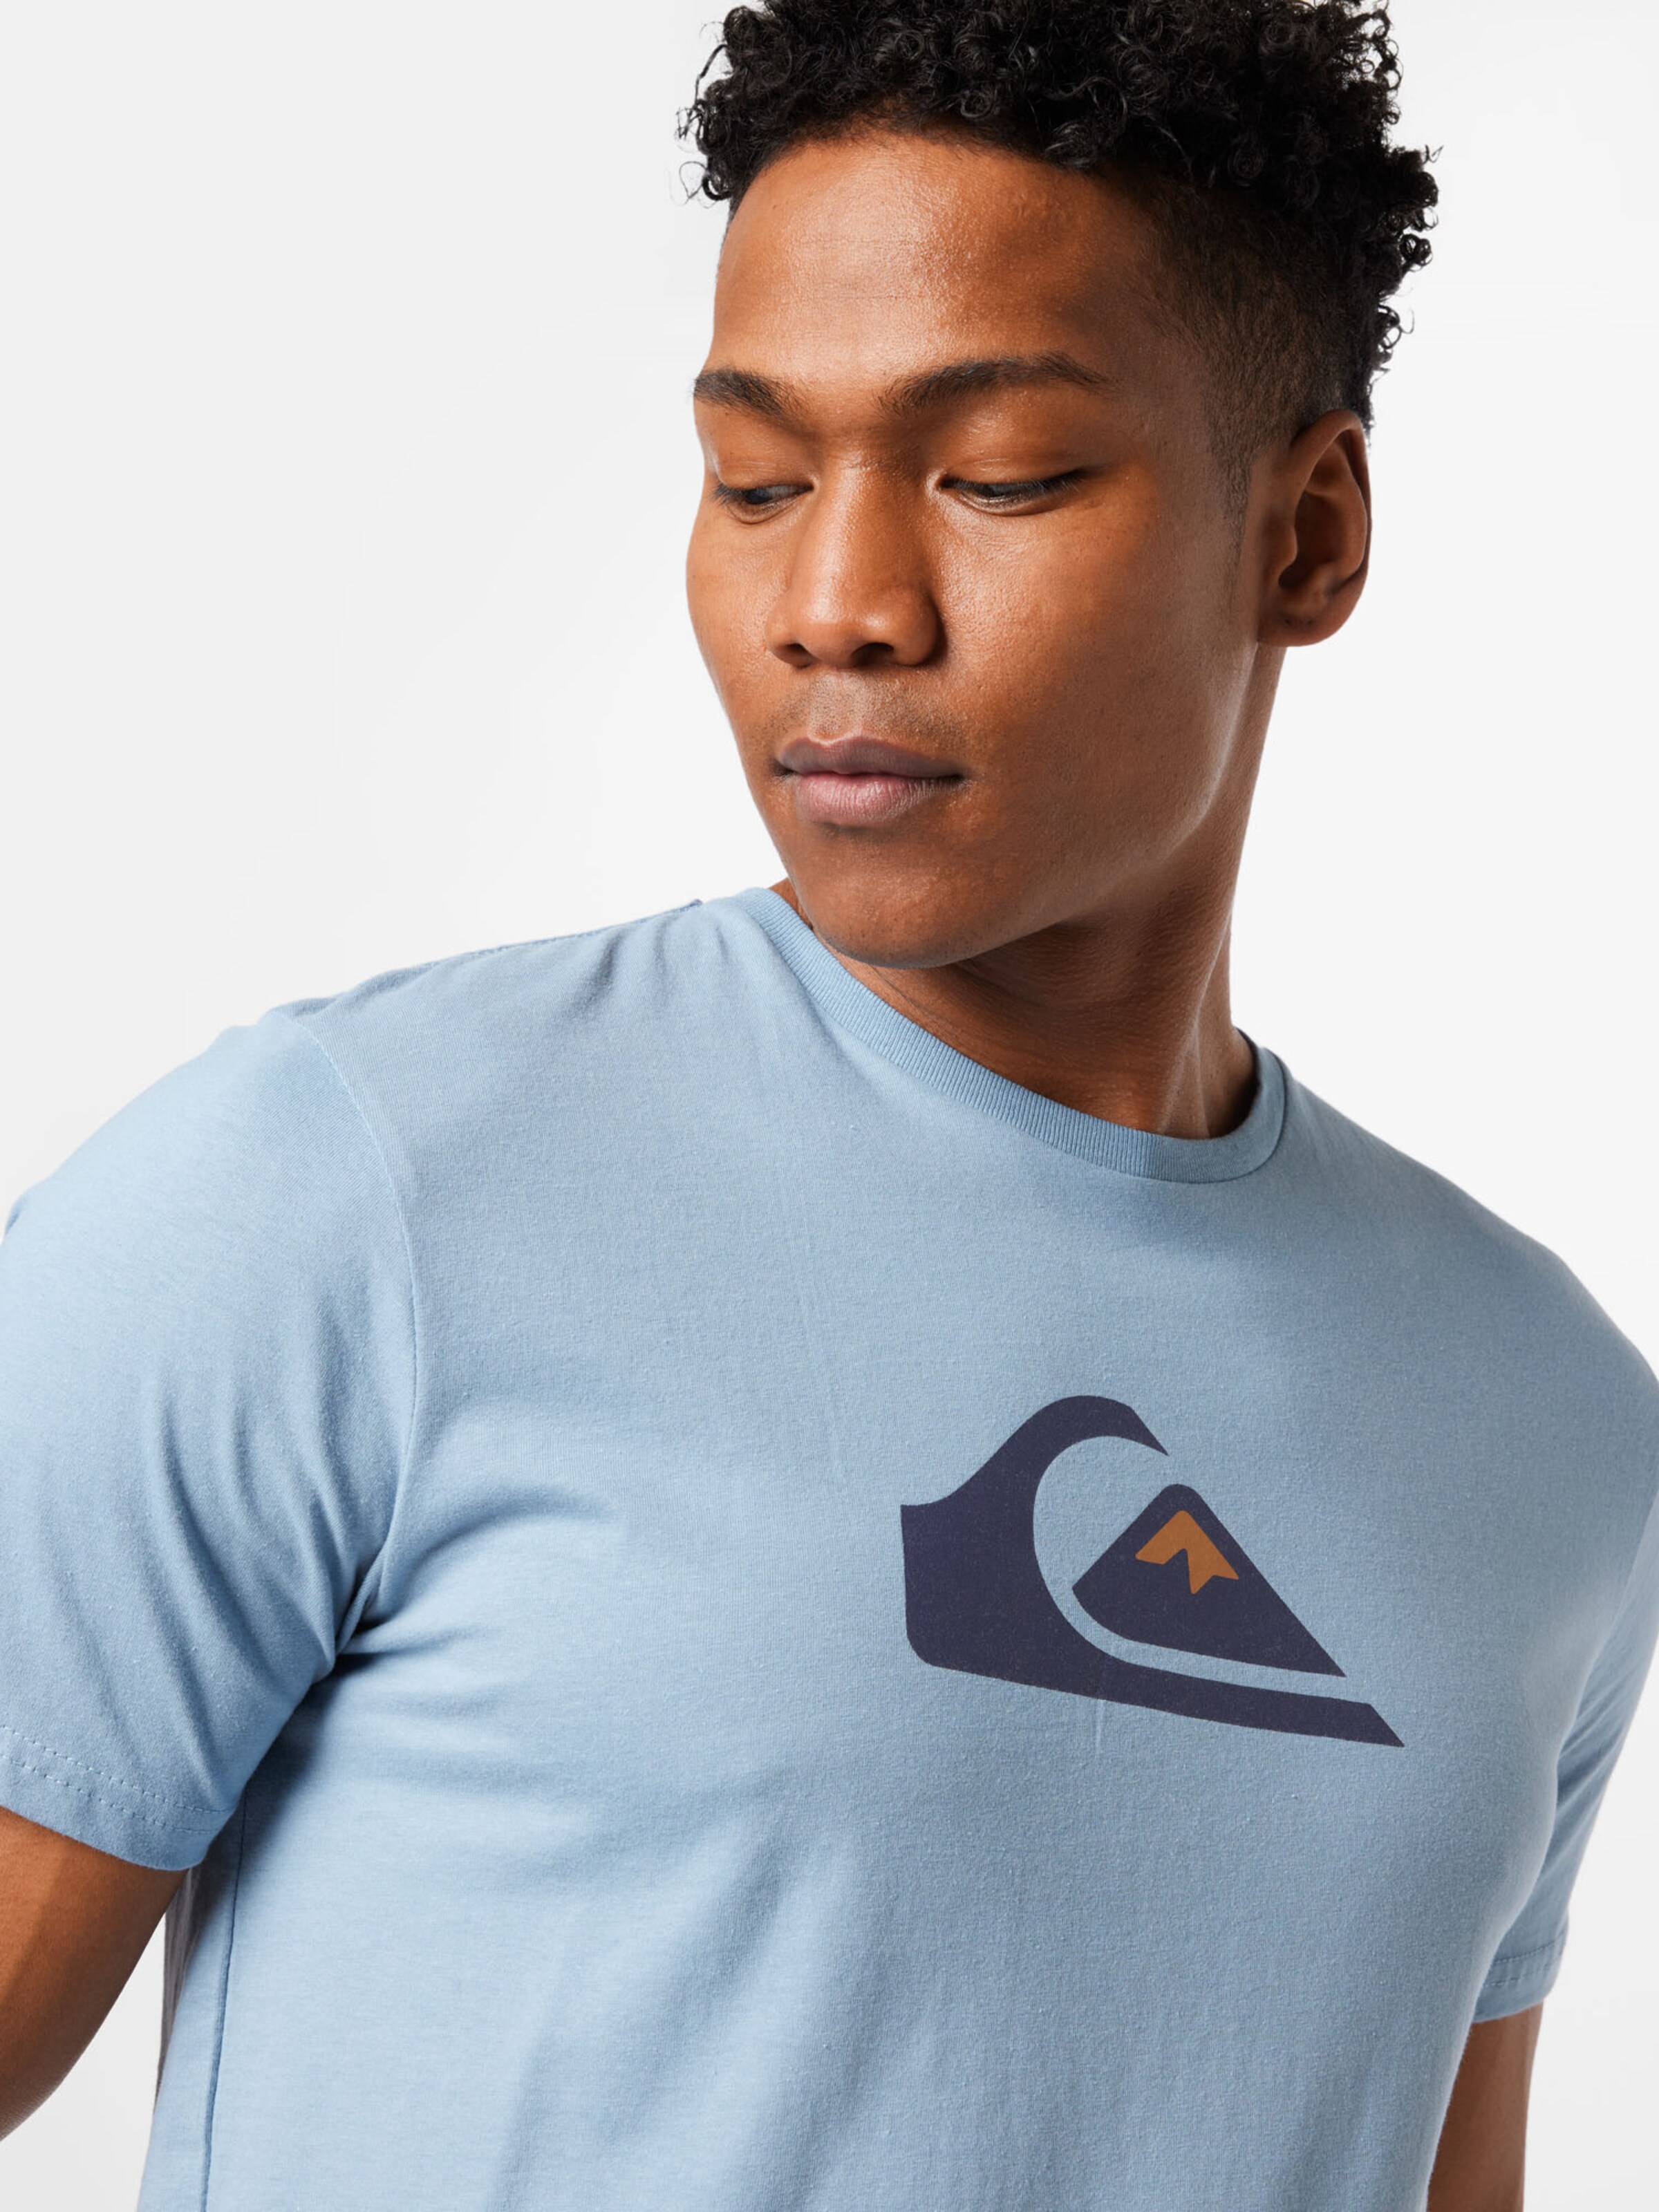 Homme T-Shirt fonctionnel QUIKSILVER en Bleu Clair, Bleu Foncé 